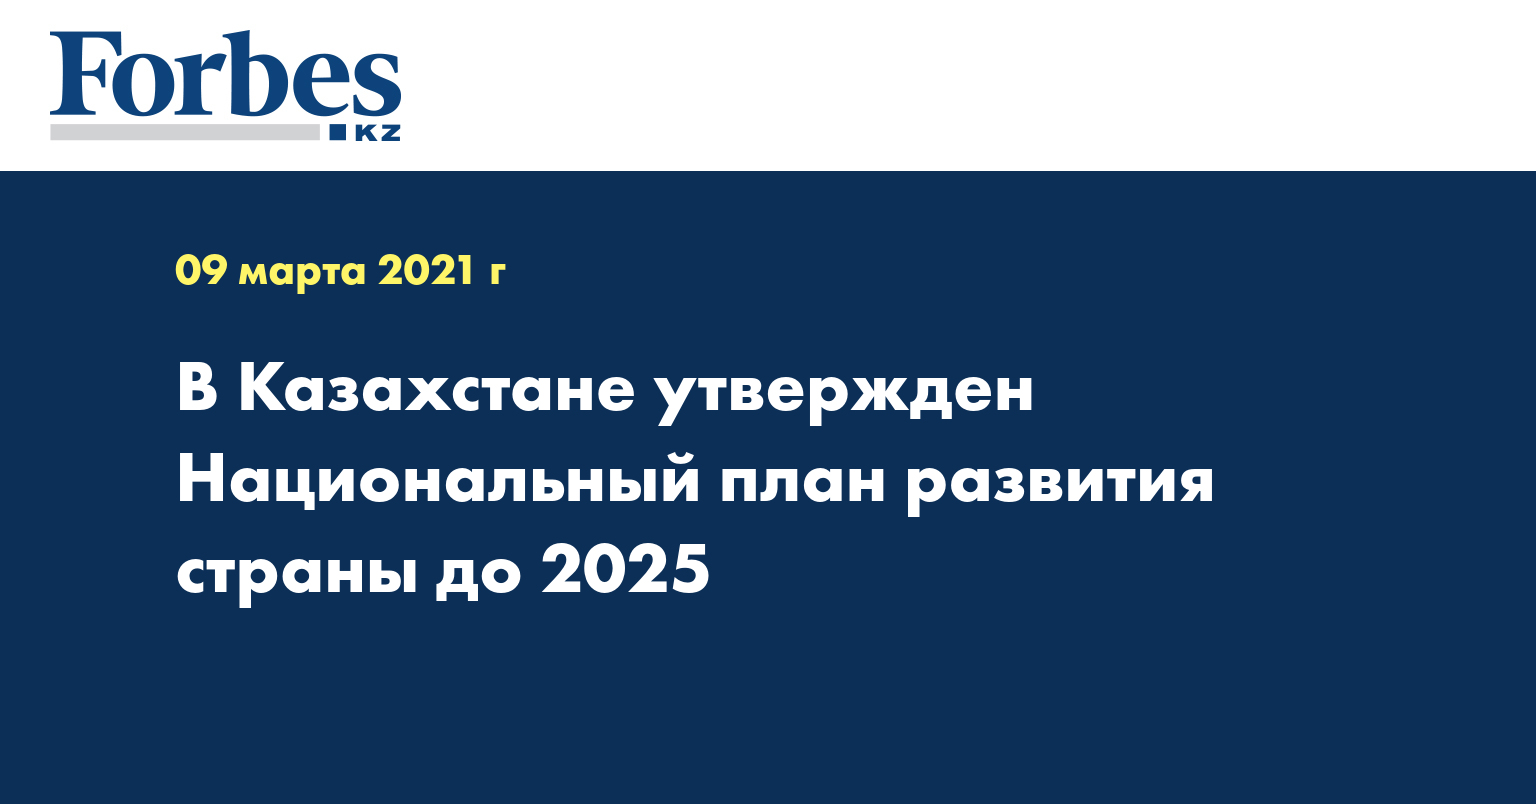 В Казахстане утвержден Национальный план развития страны до 2025